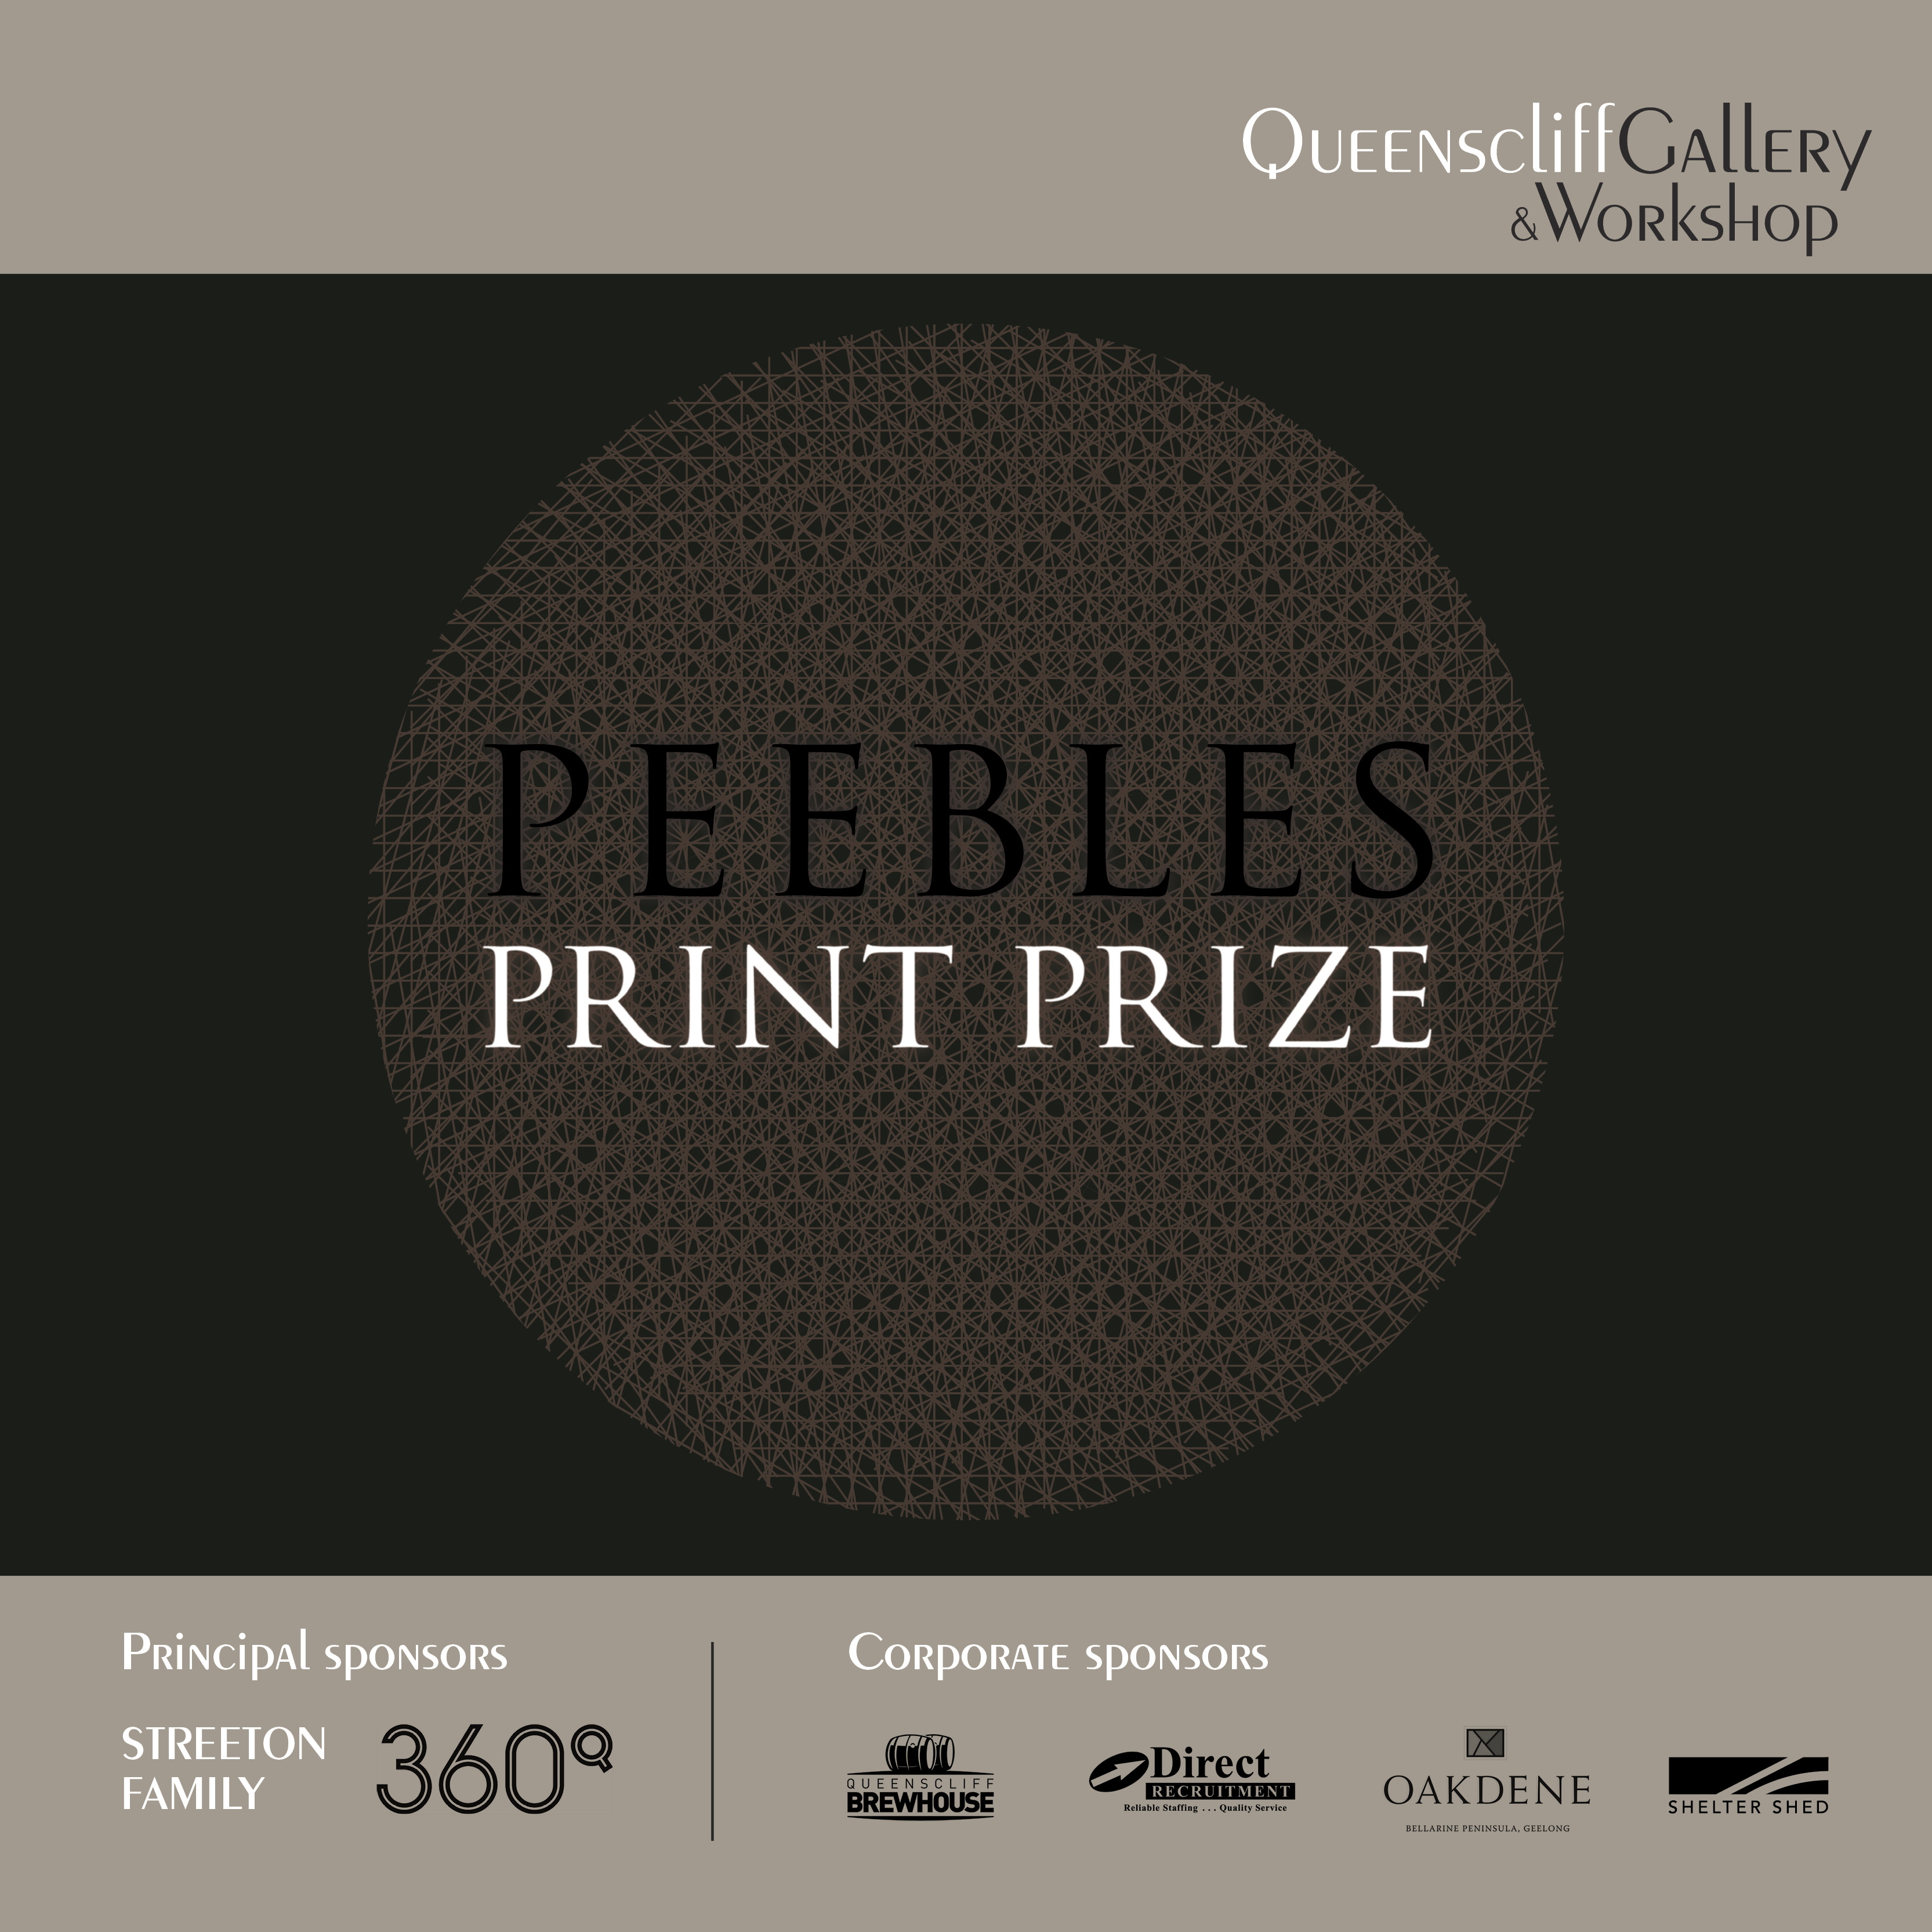 Peebles Print Prize 2021